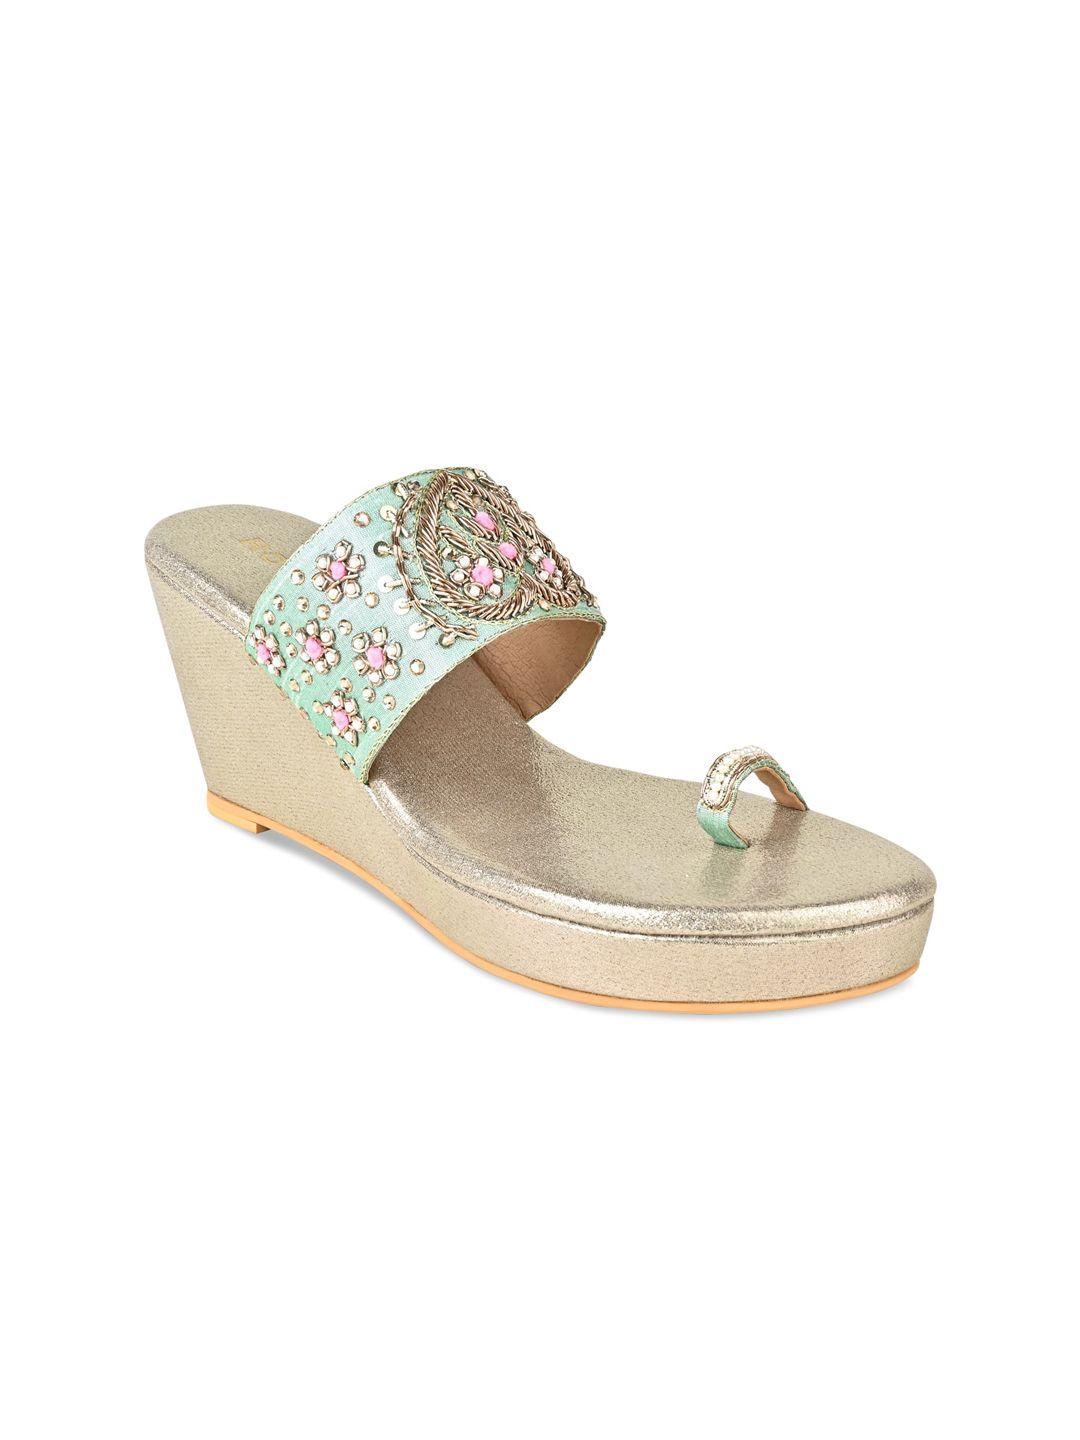 rocia embellished ethnic wedge heels